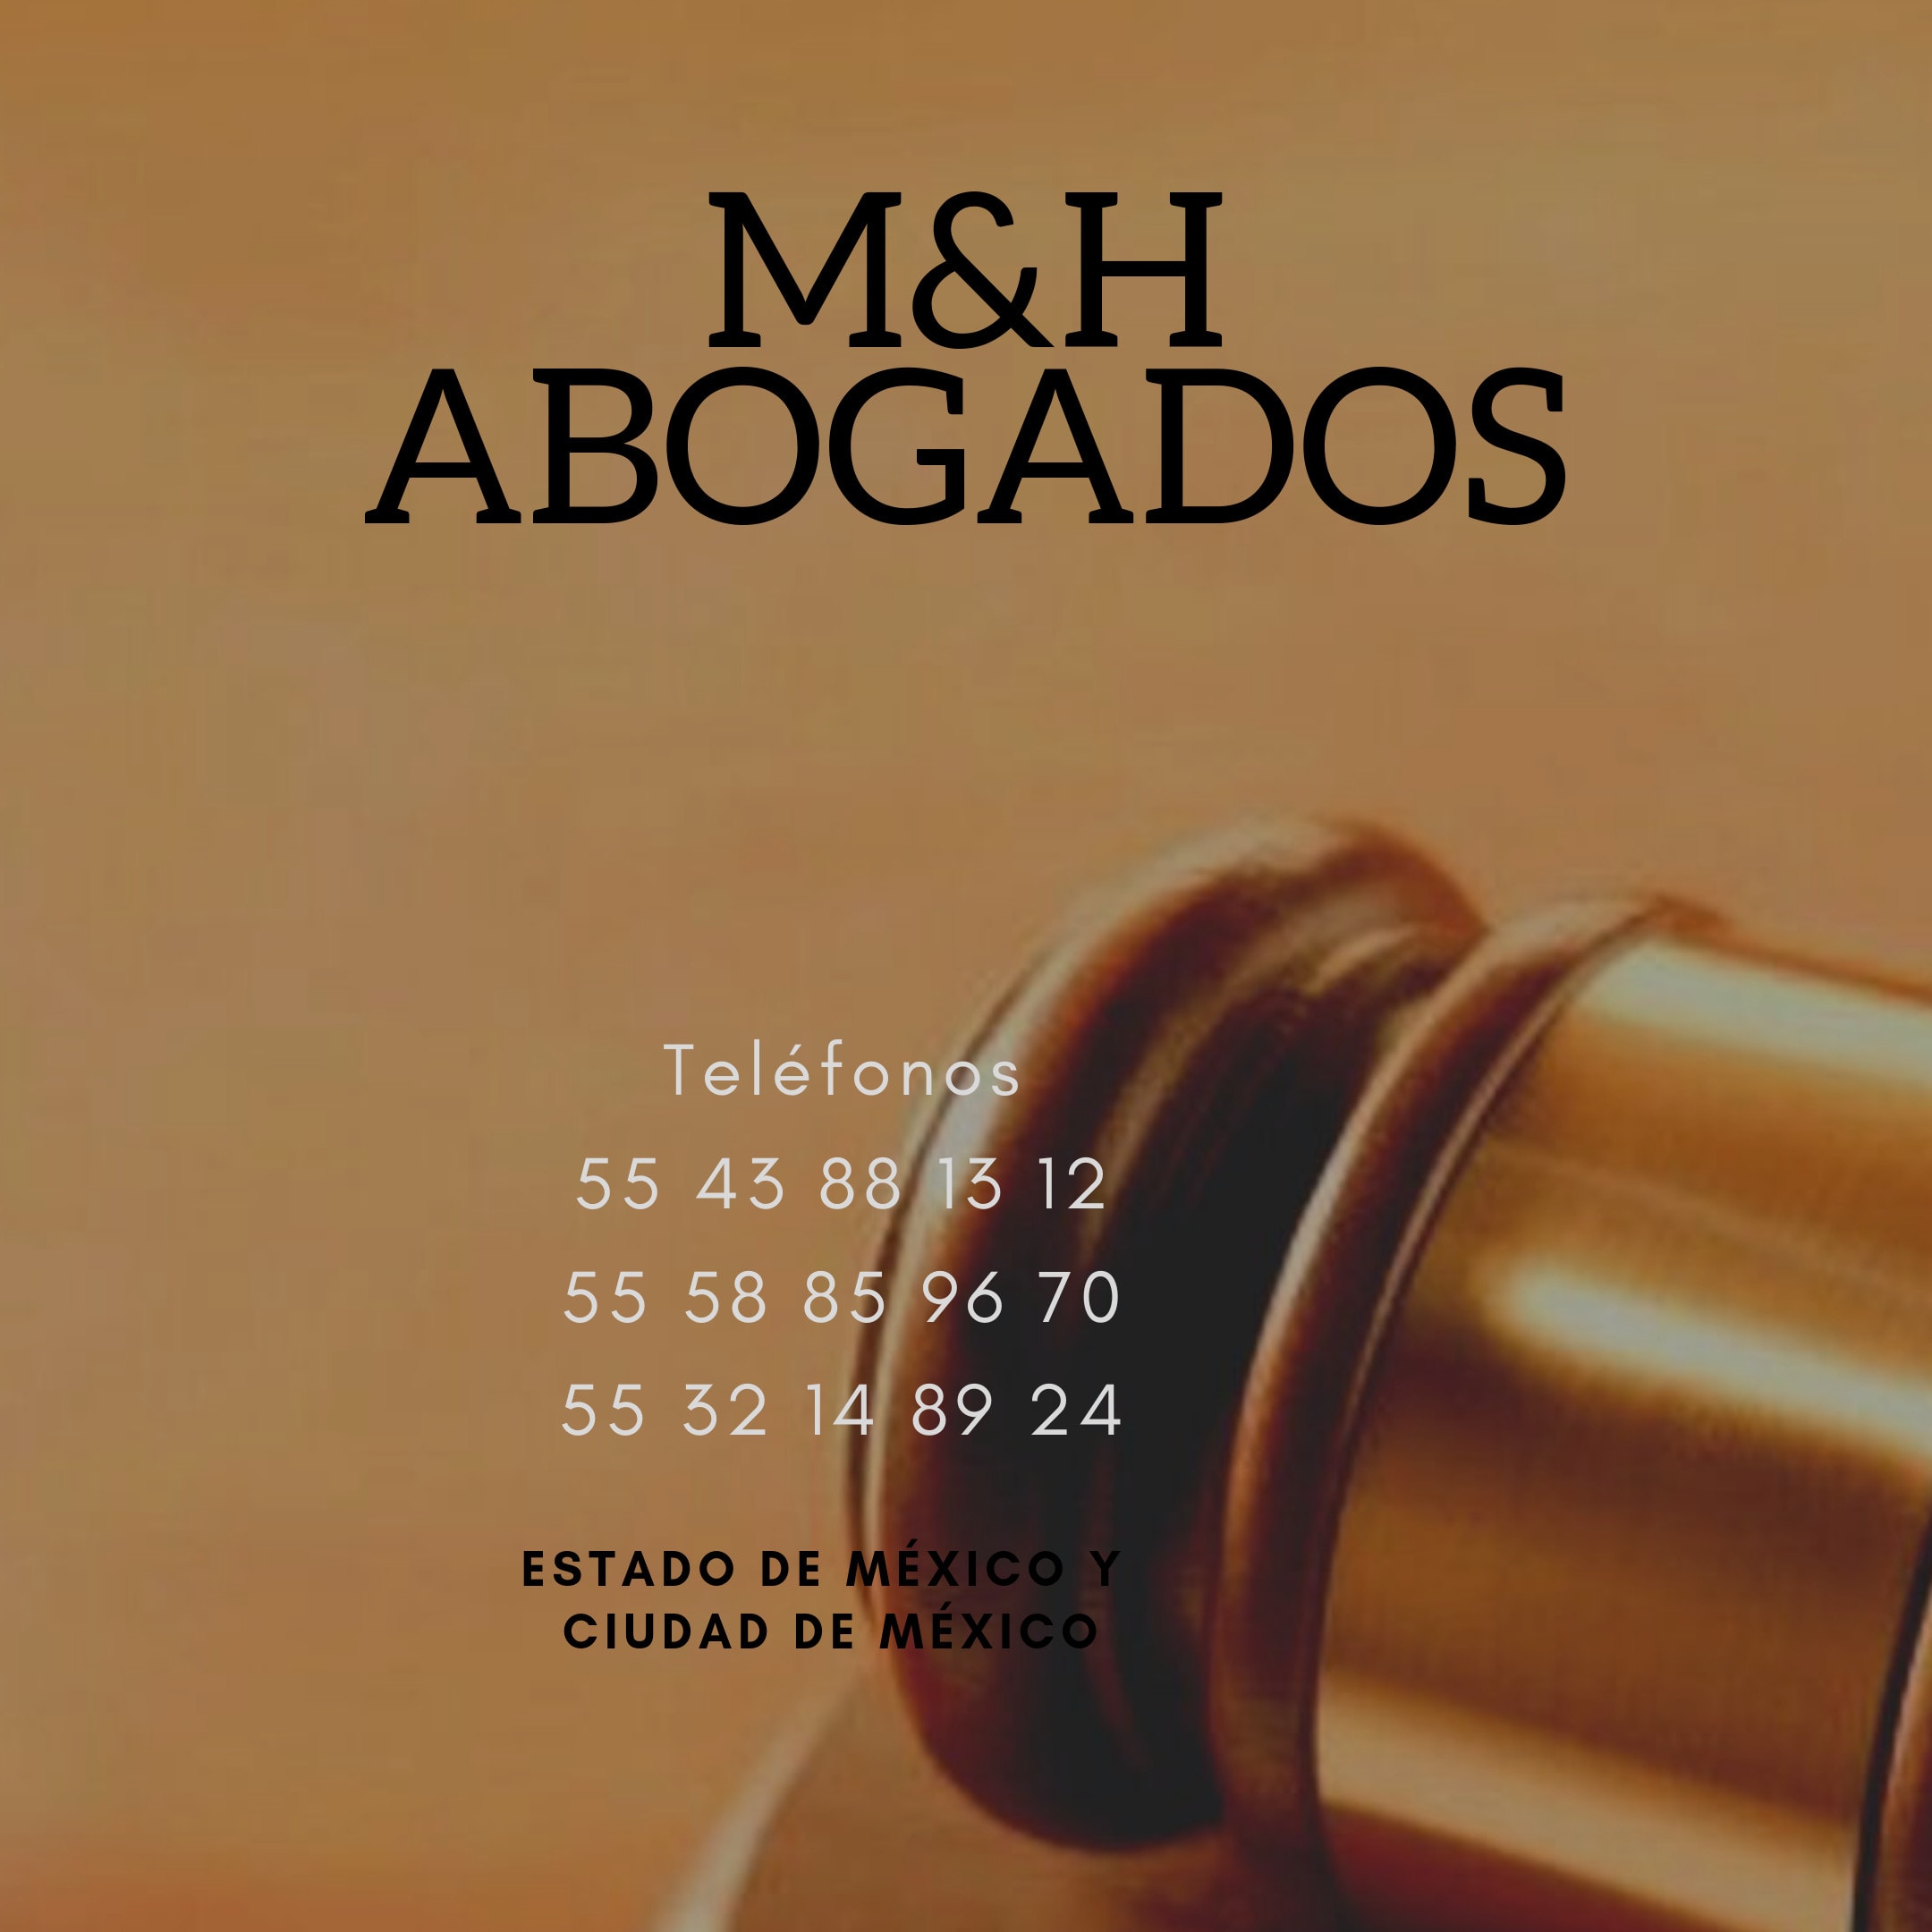 M&H Abogados